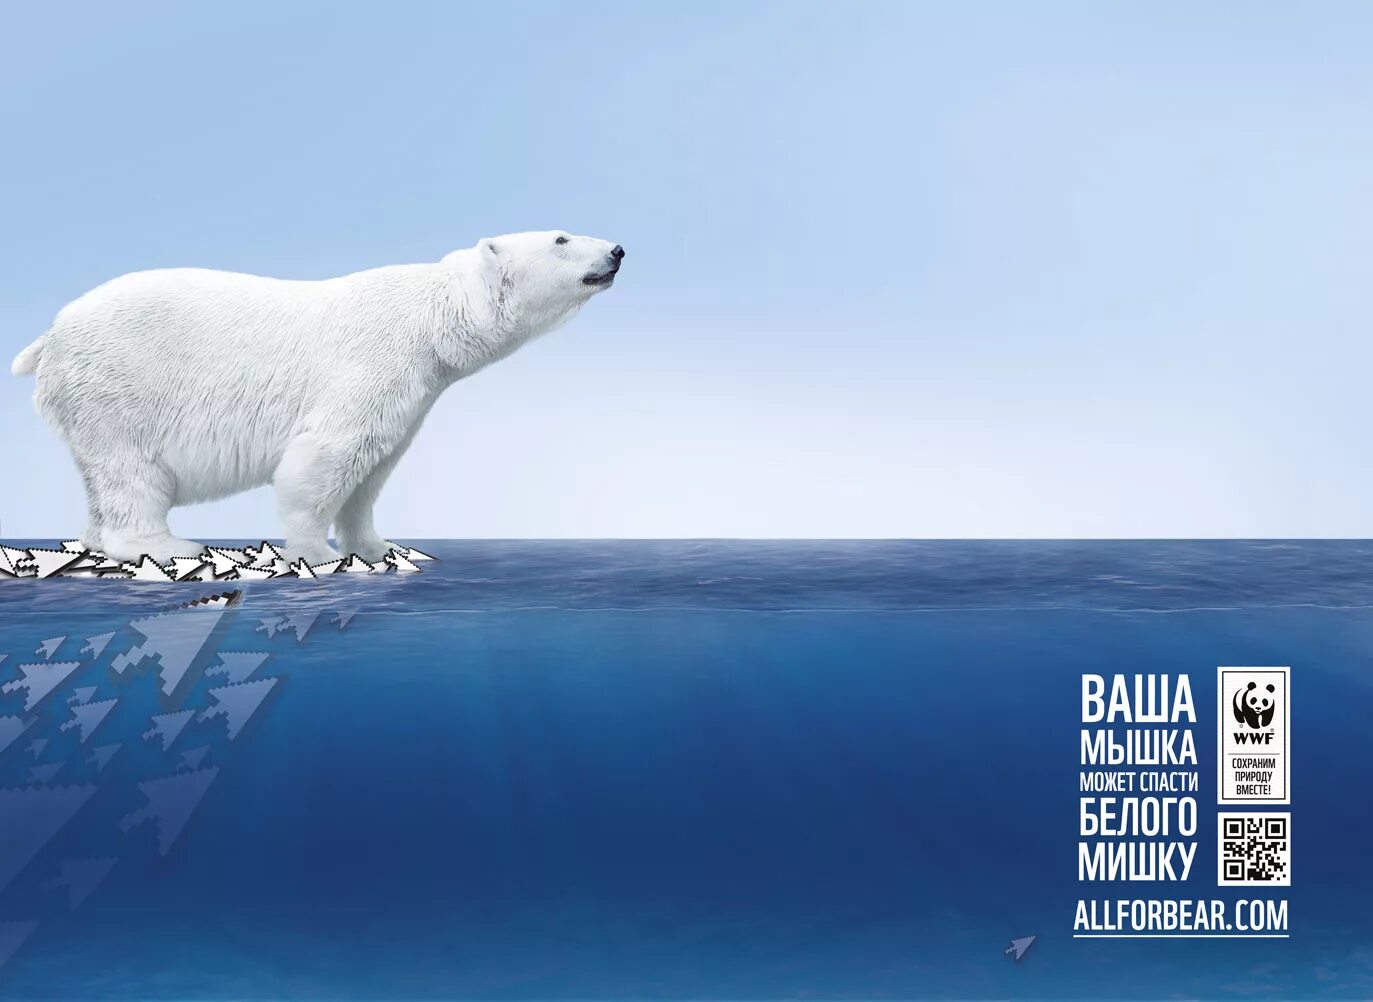 Слоган животное. Всемирный фонд дикой природы WWF России. Всемирный фонд дикой природы WWF реклама. Социальная реклама Всемирного фонда дикой природы. Креативная реклама с медведем.